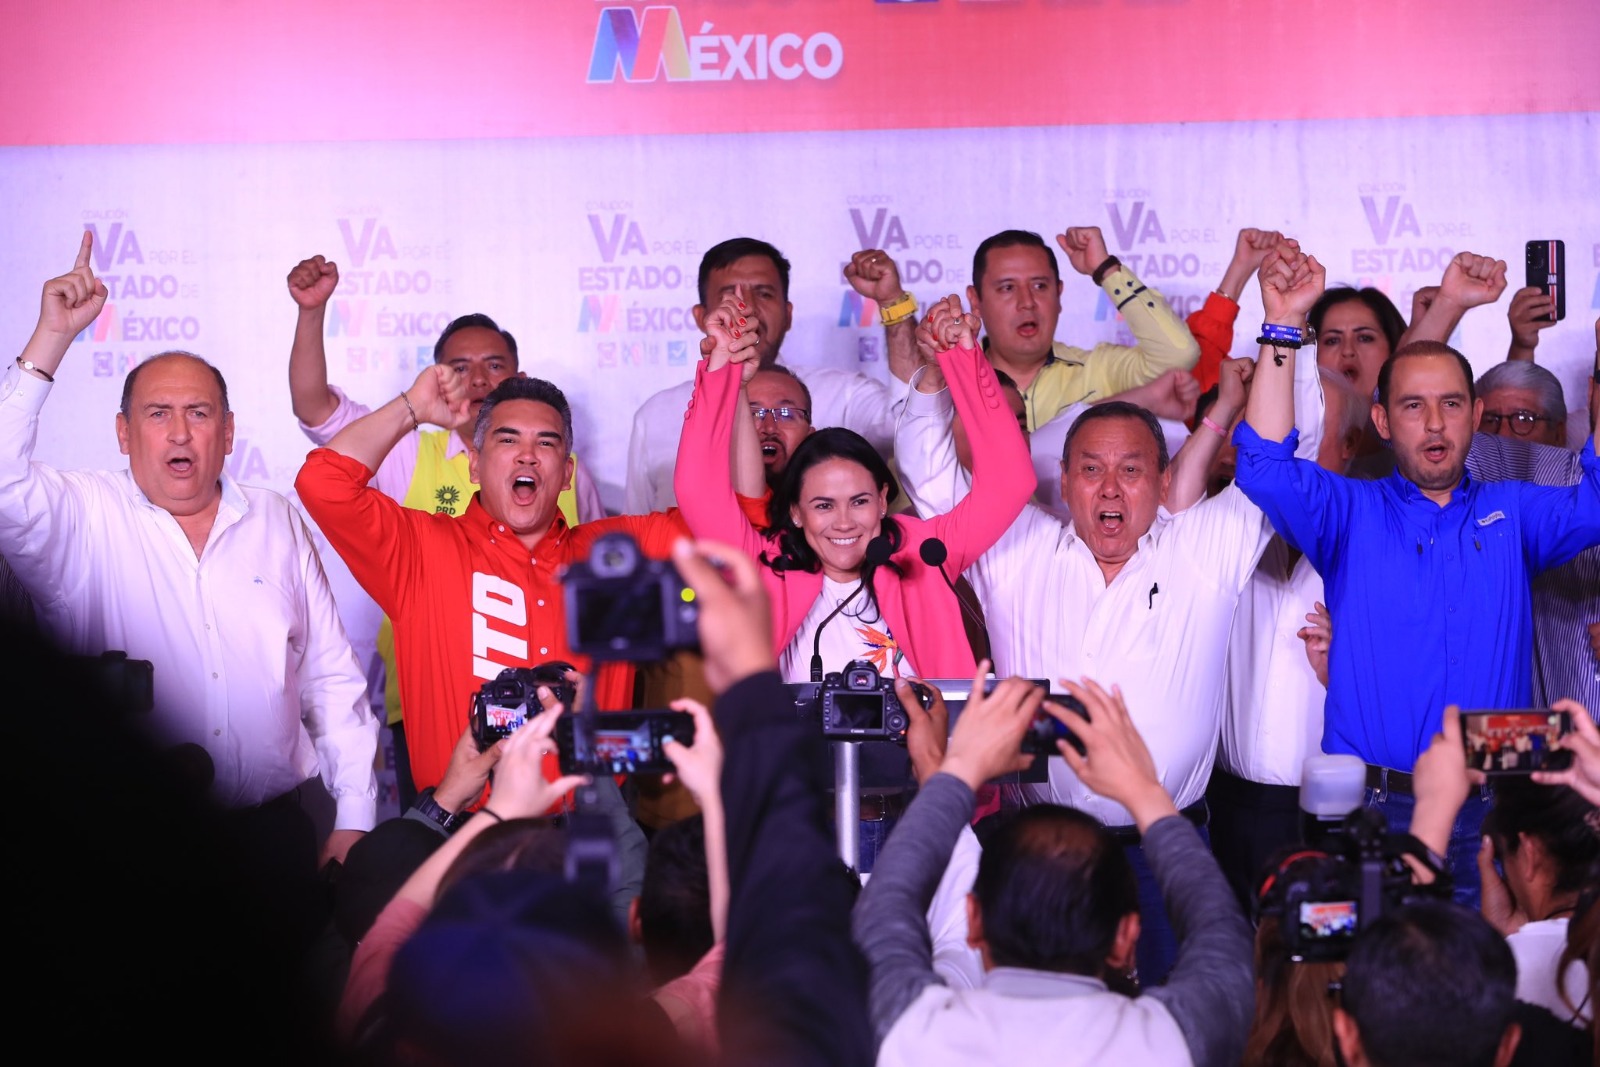 “Podemos decirles que ganamos la elección en el Estado de México”: Alejanrda del Moral